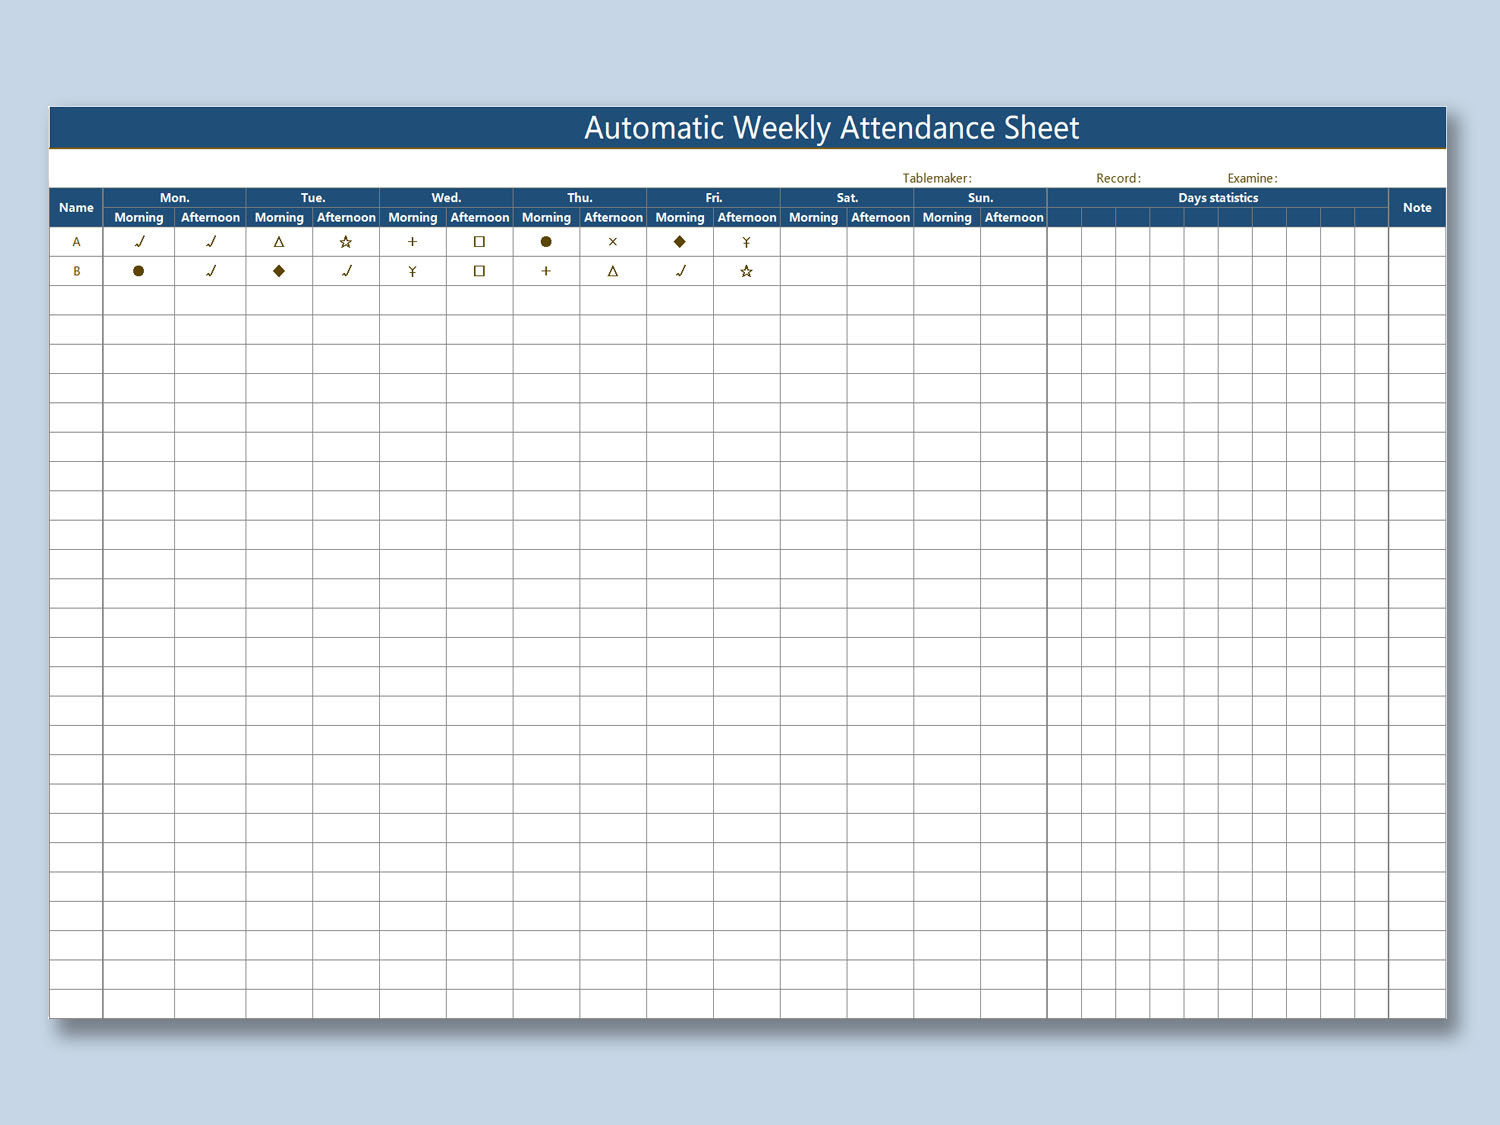 Employee Attendance Sheet Calendar Tracker Template In Pdf-2021 Attendance Calendar Download